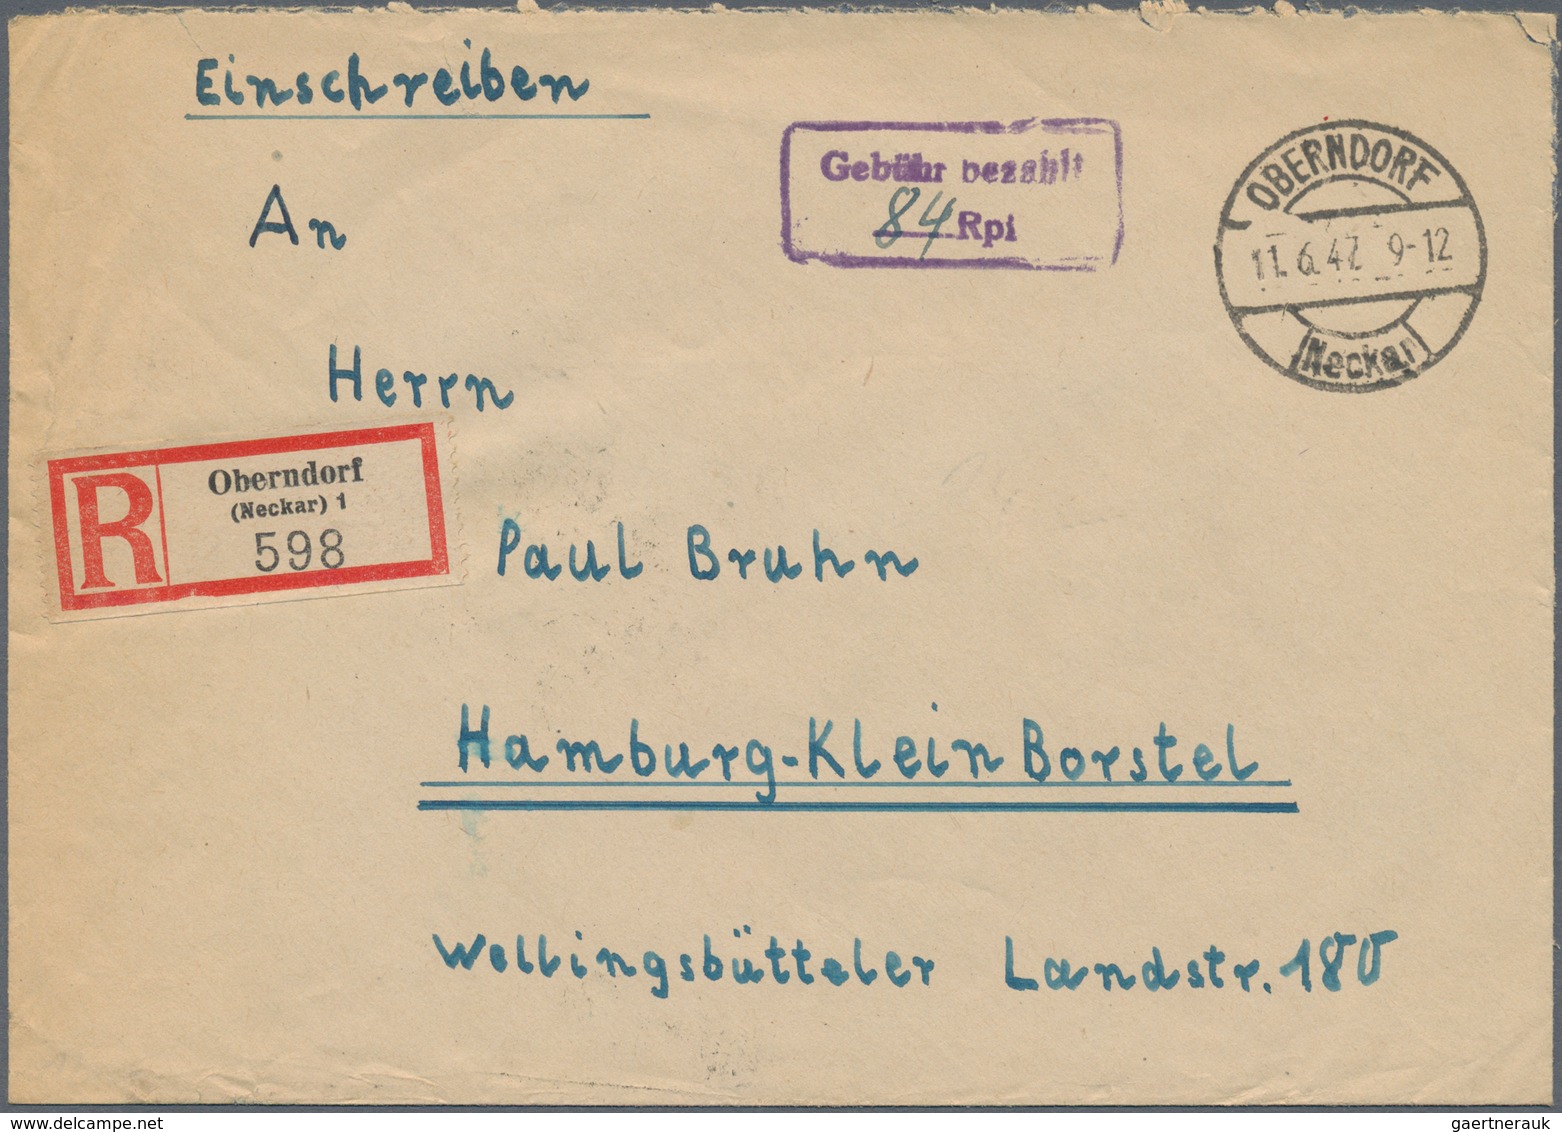 Alliierte Besetzung - Gebühr Bezahlt: 1945/1949, Württemberg Plz 14a/b, saubere Partie von ca. 173 G